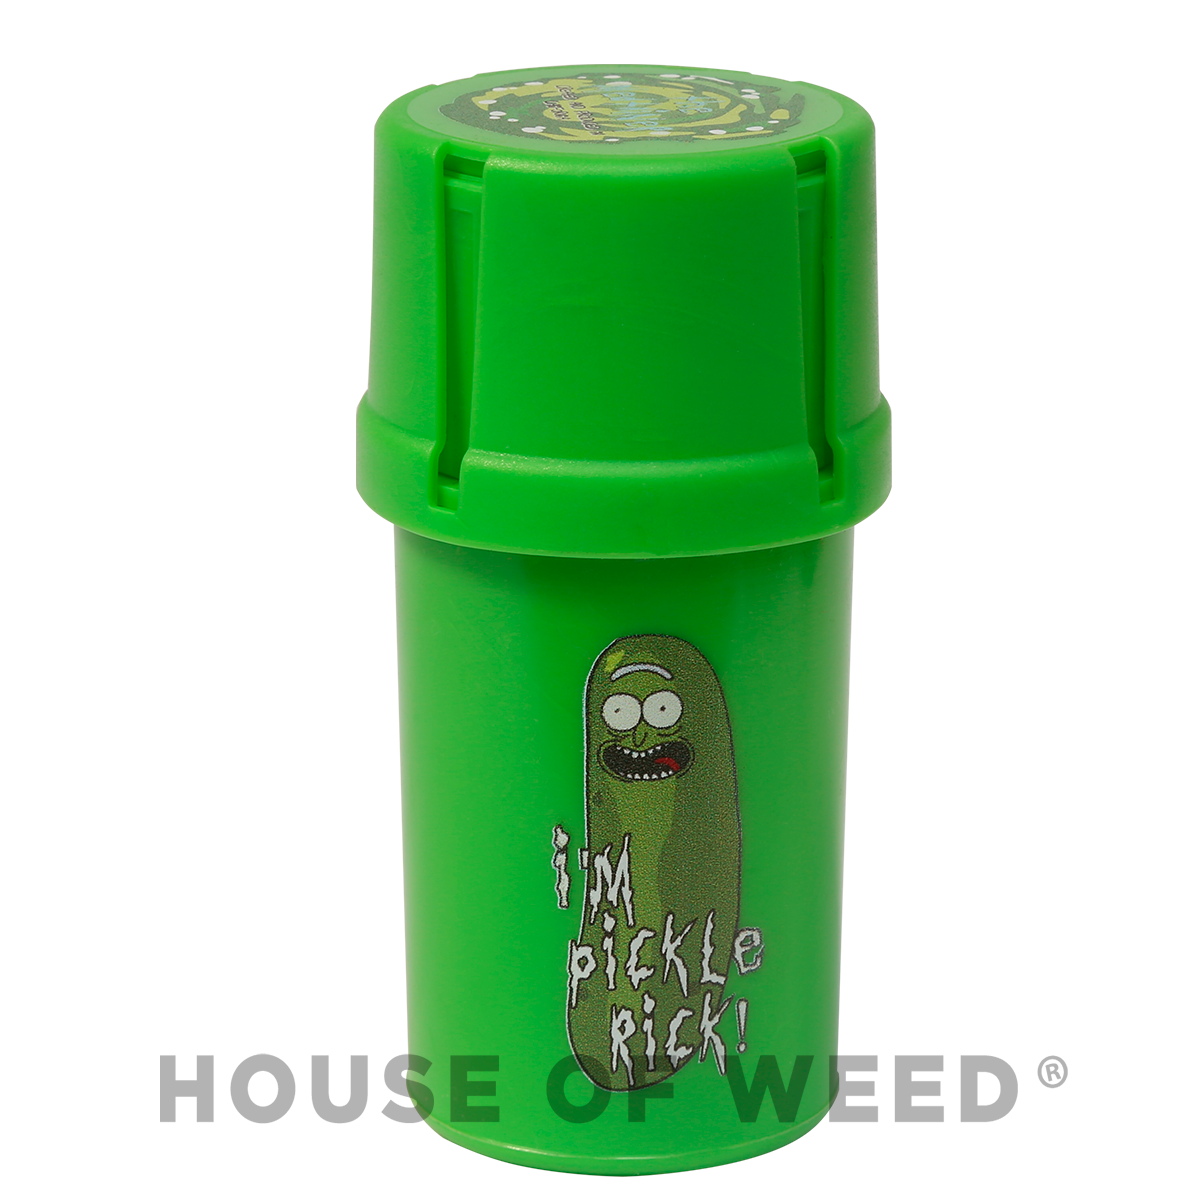 Moledor y contenedor color verde modelo Pickle Rick